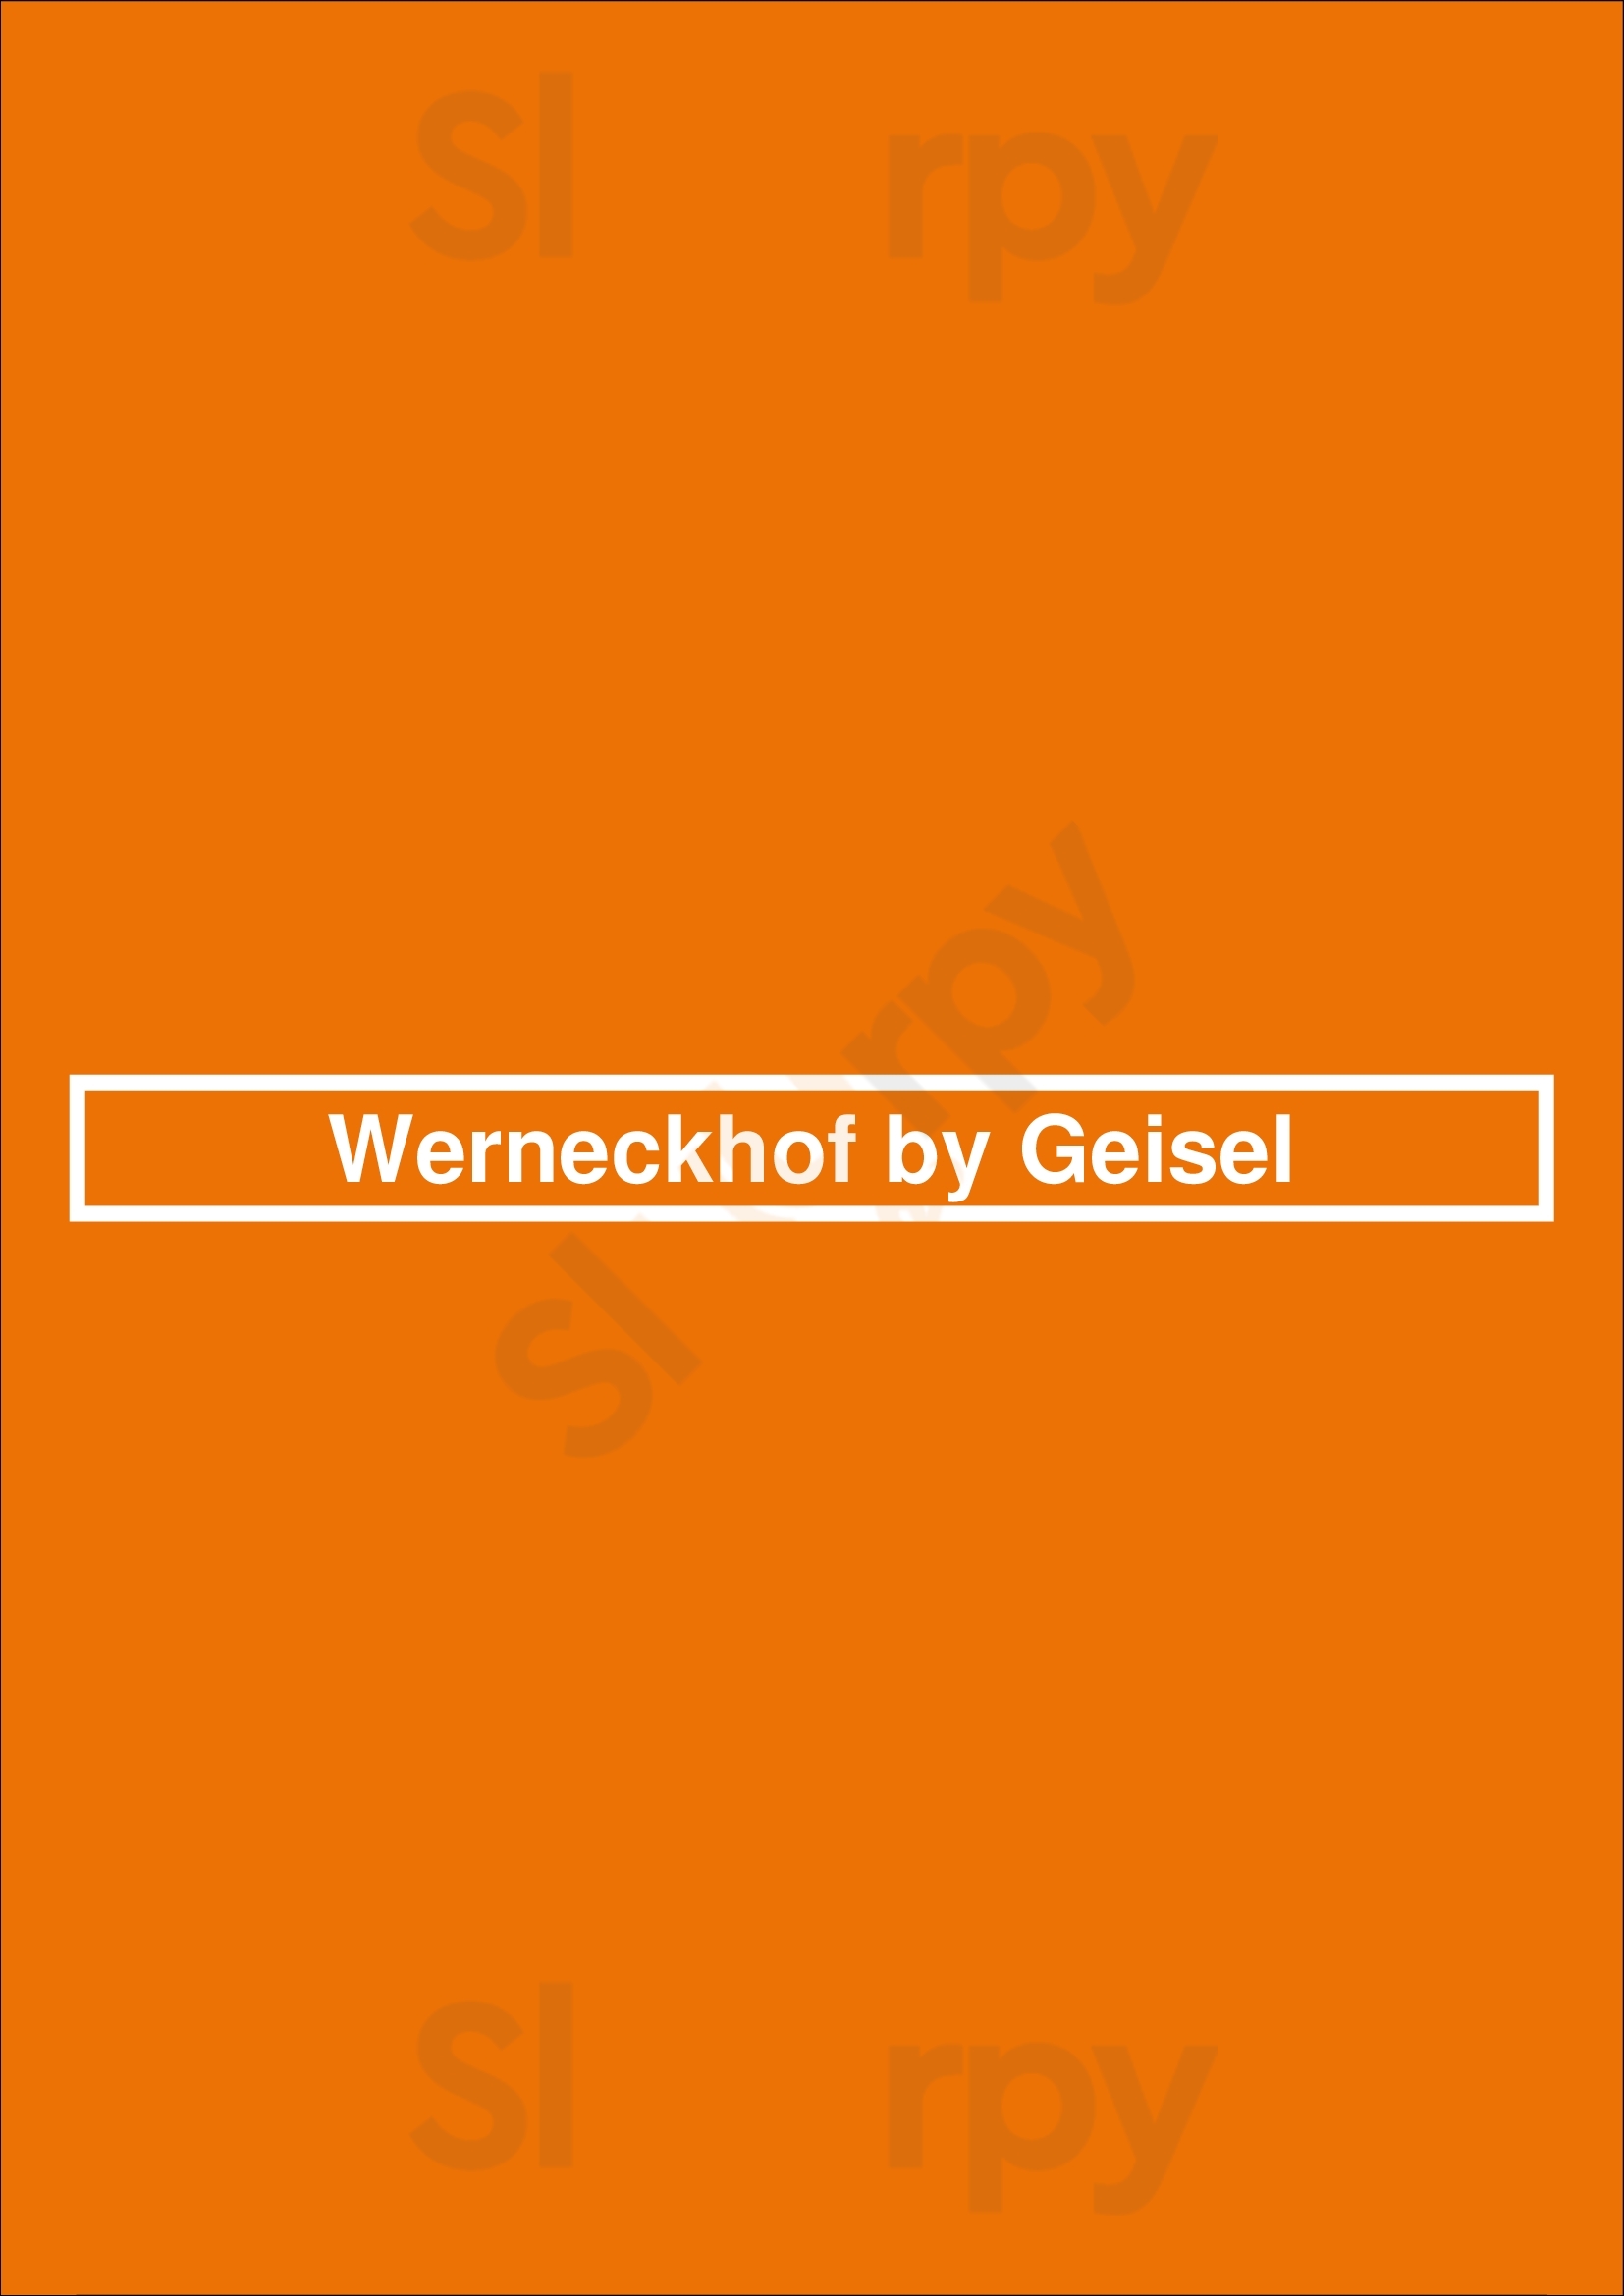 Werneckhof By Geisel München Menu - 1